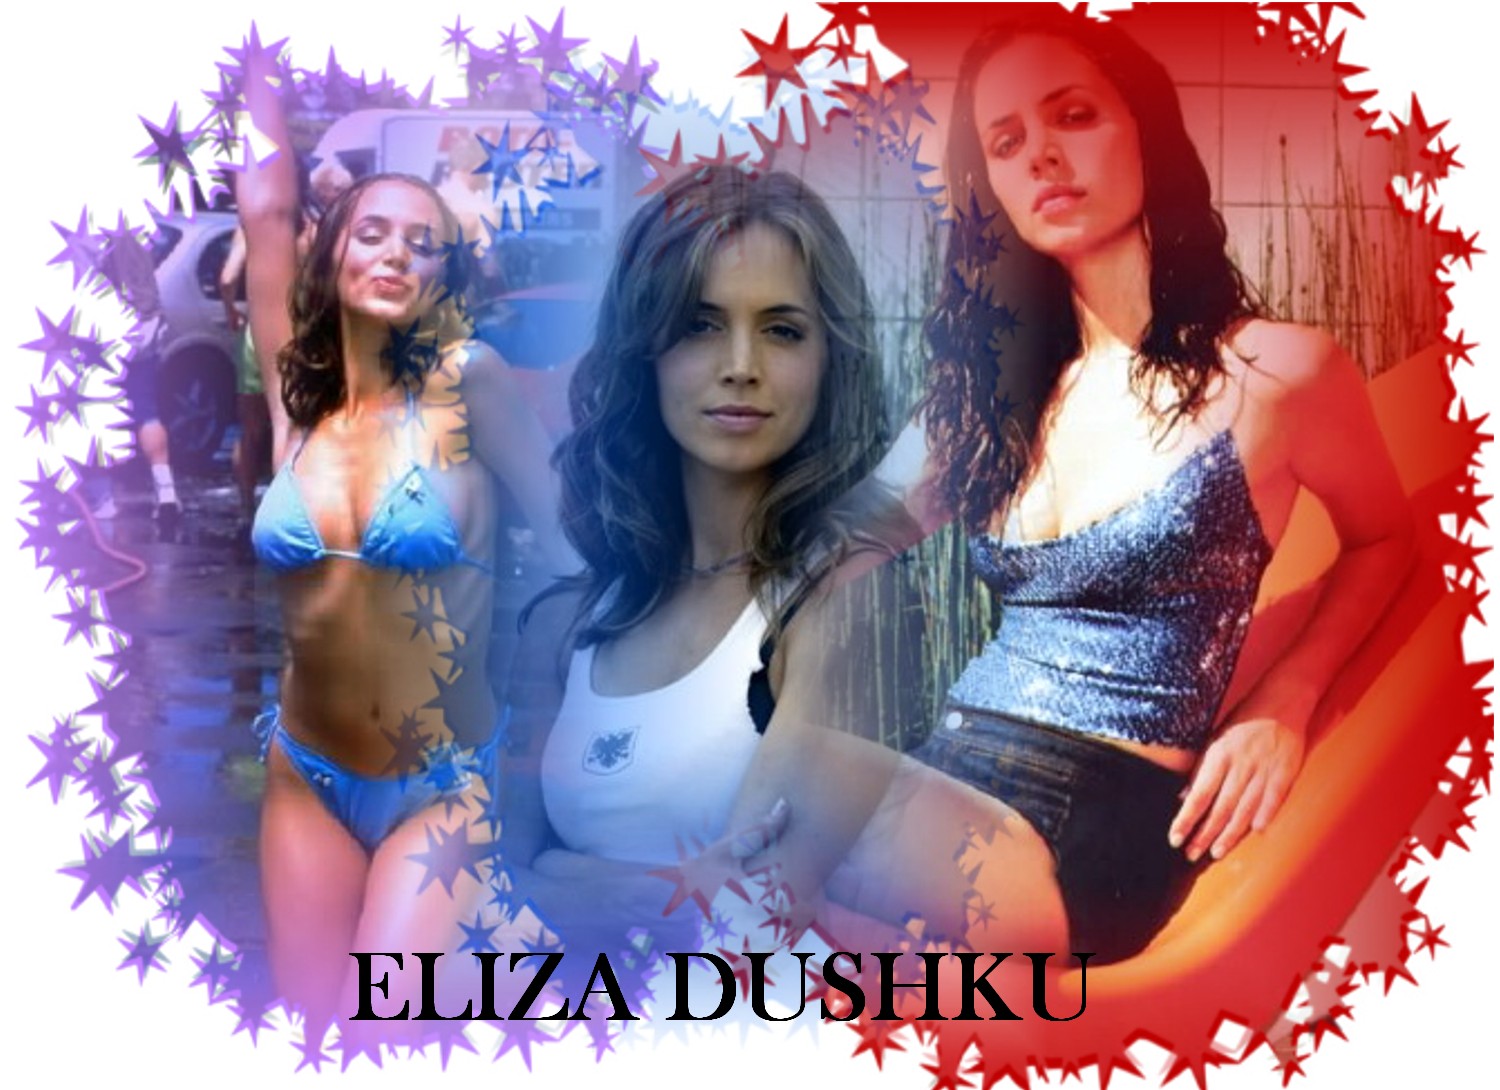 Eliza dushku 9